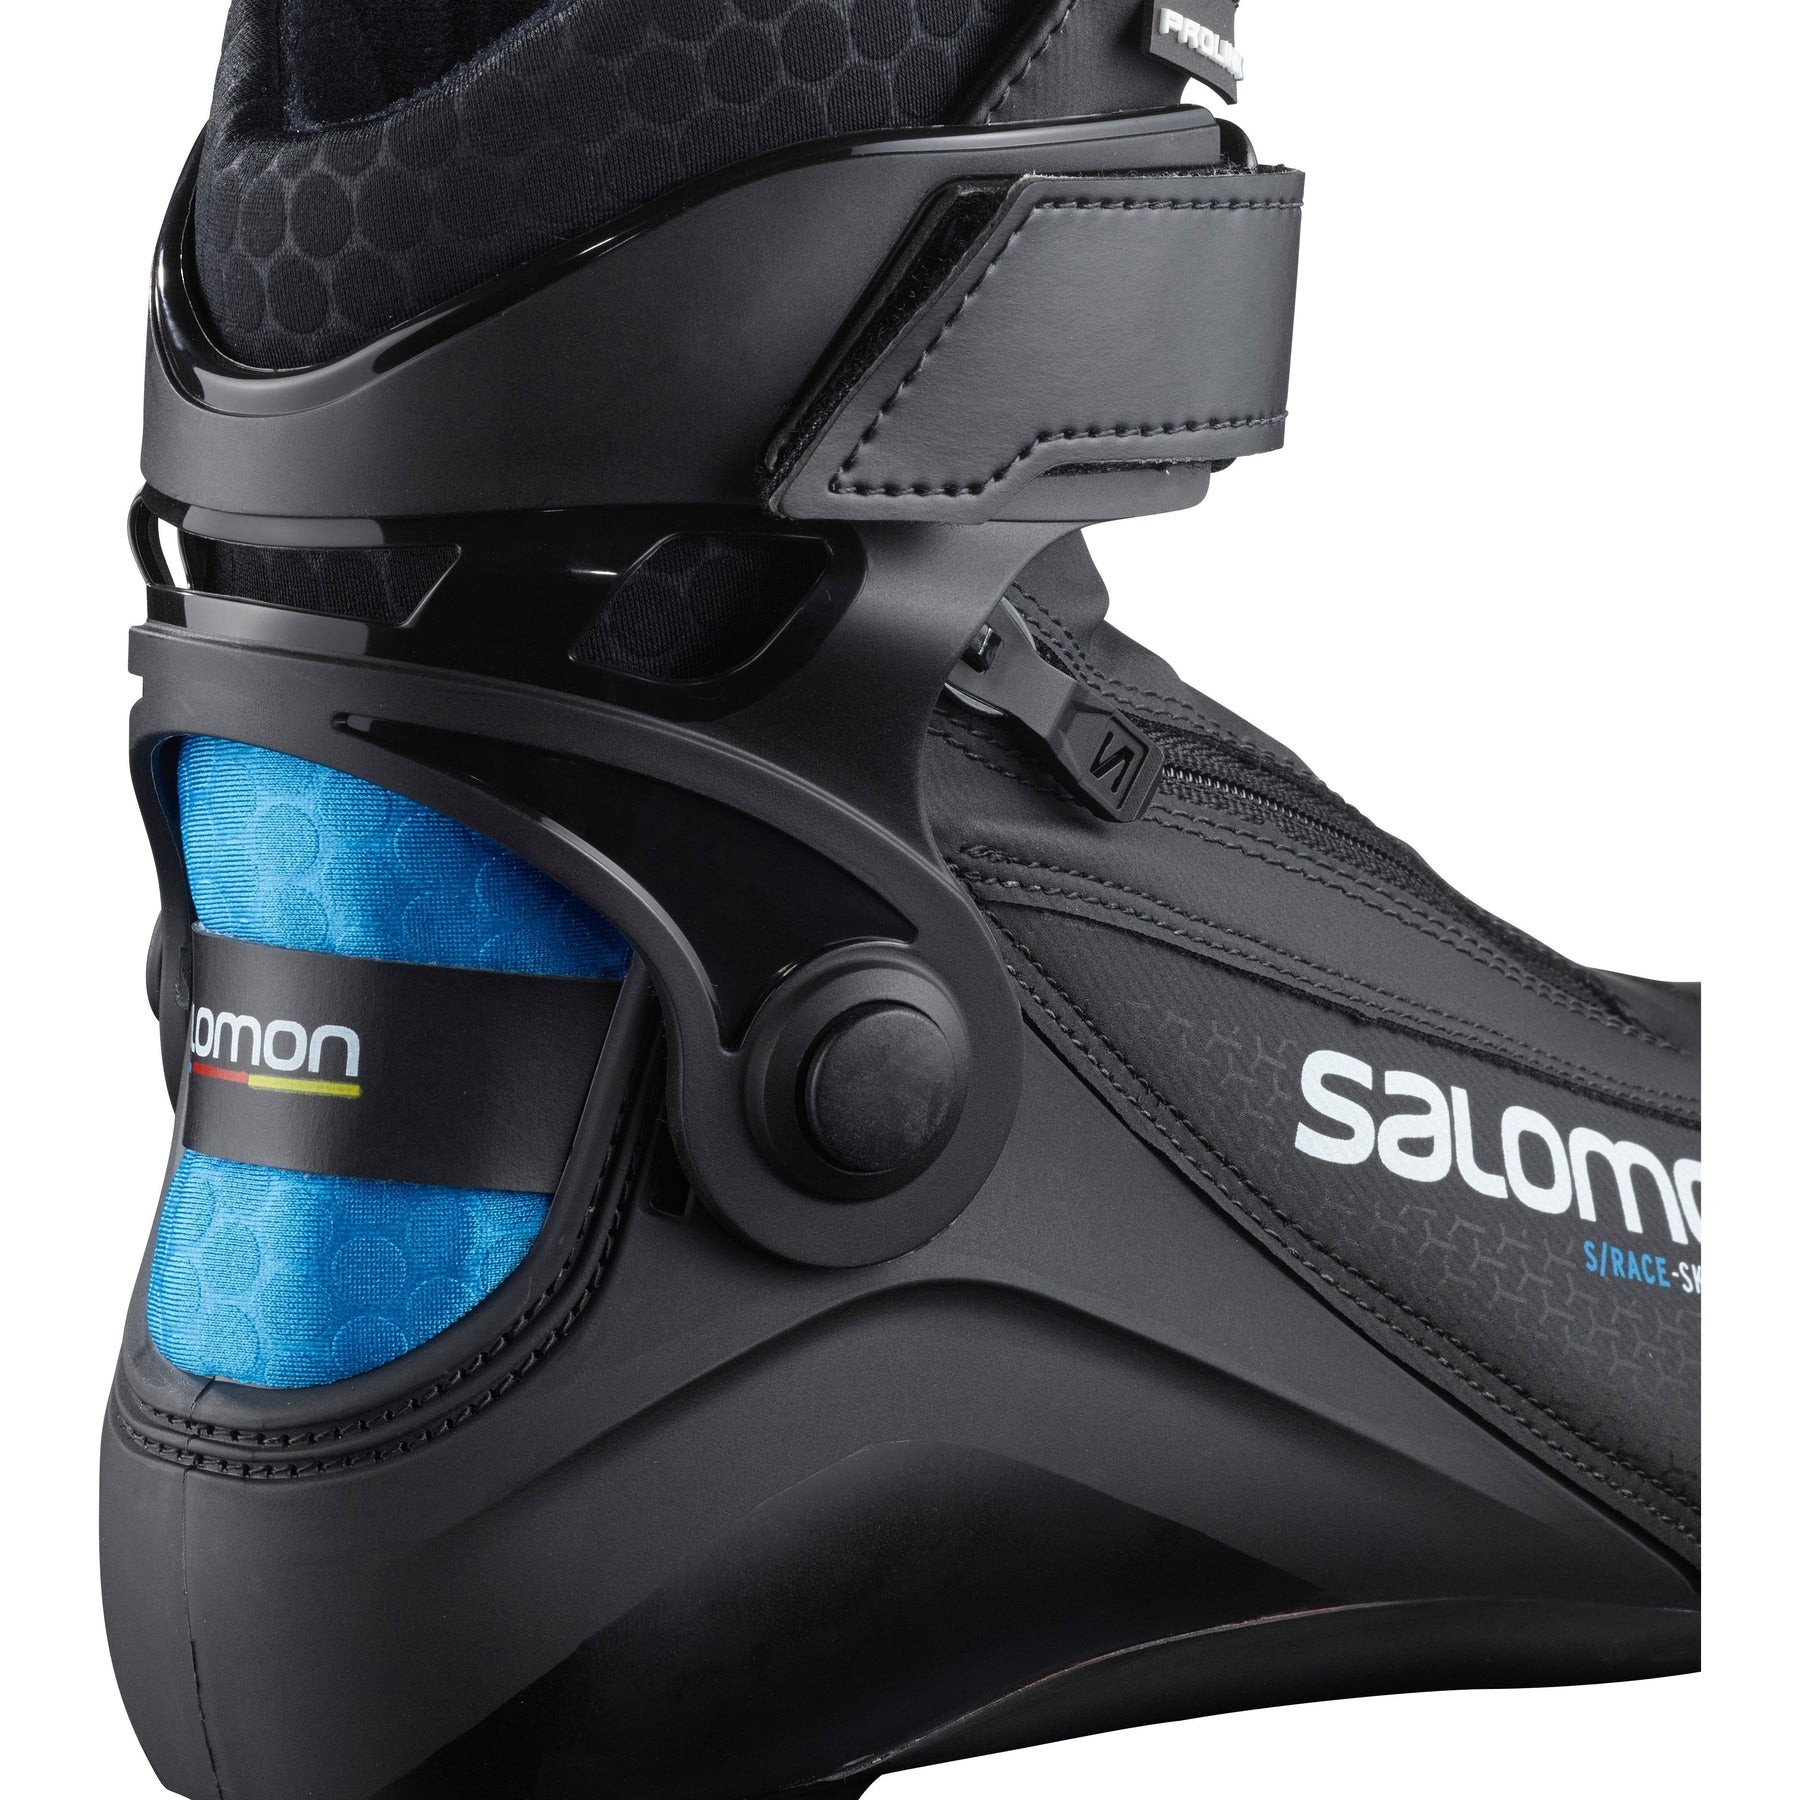 Salomon S/Race Skiathlon Prolink Jr